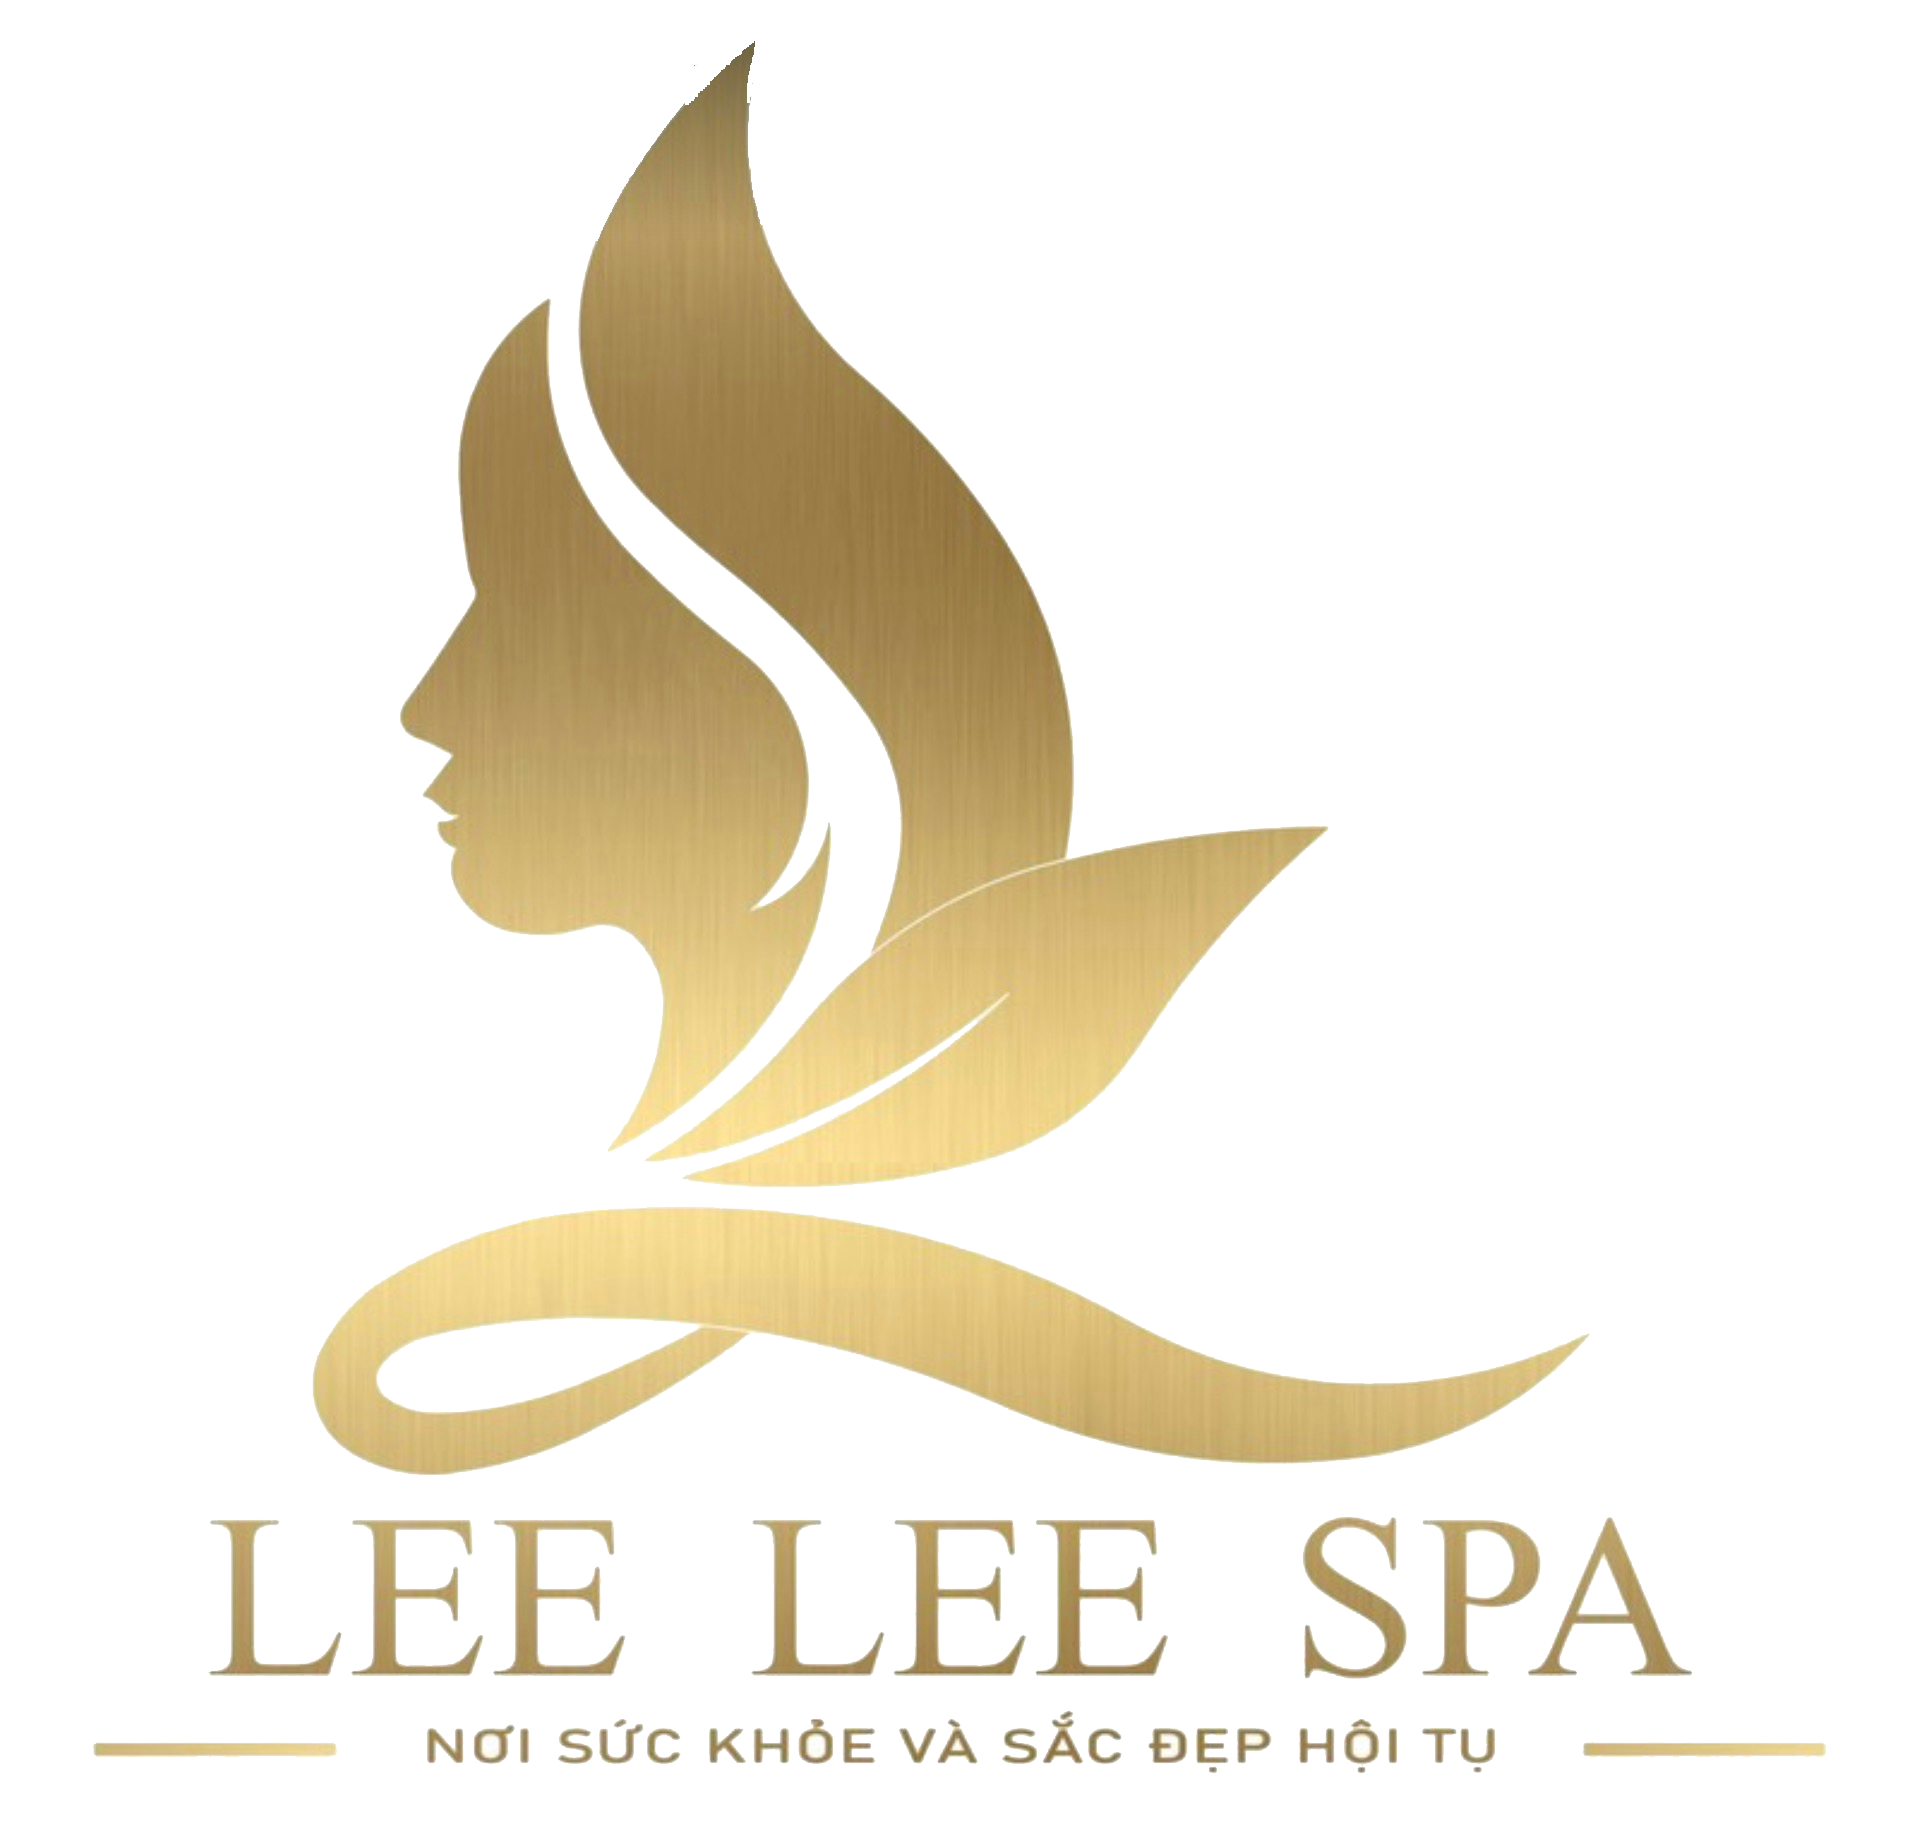 Spa Phan Rang Lee Lee